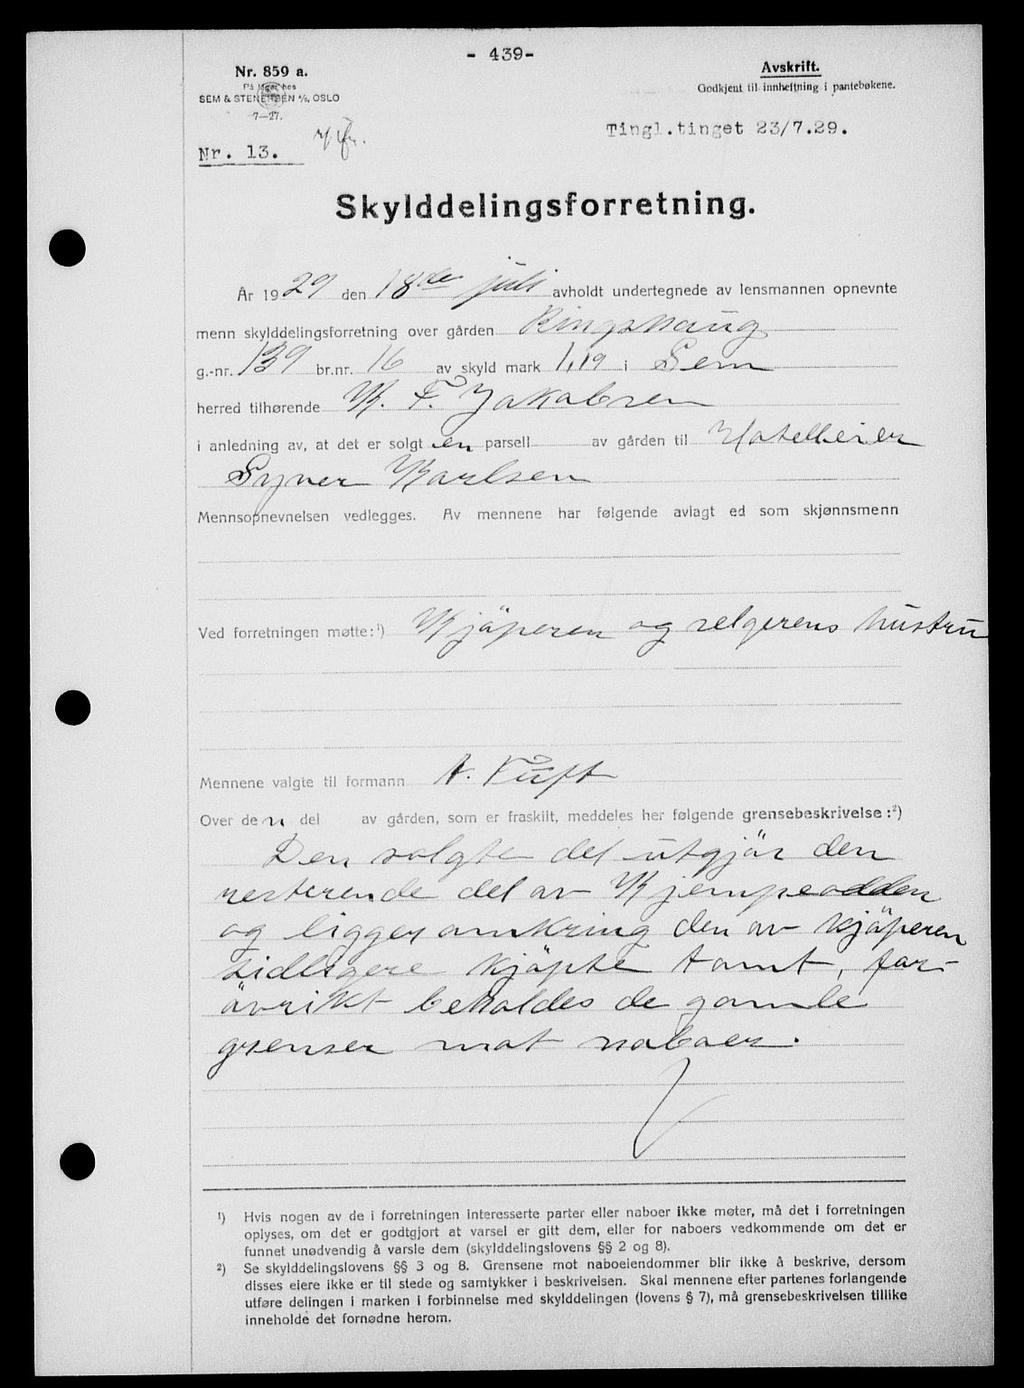 Kildeinformasjon: Gammel arkivreferanse: II 2, Sted: Søndre Jarlsberg sorenskriveri, Sem, Stokke